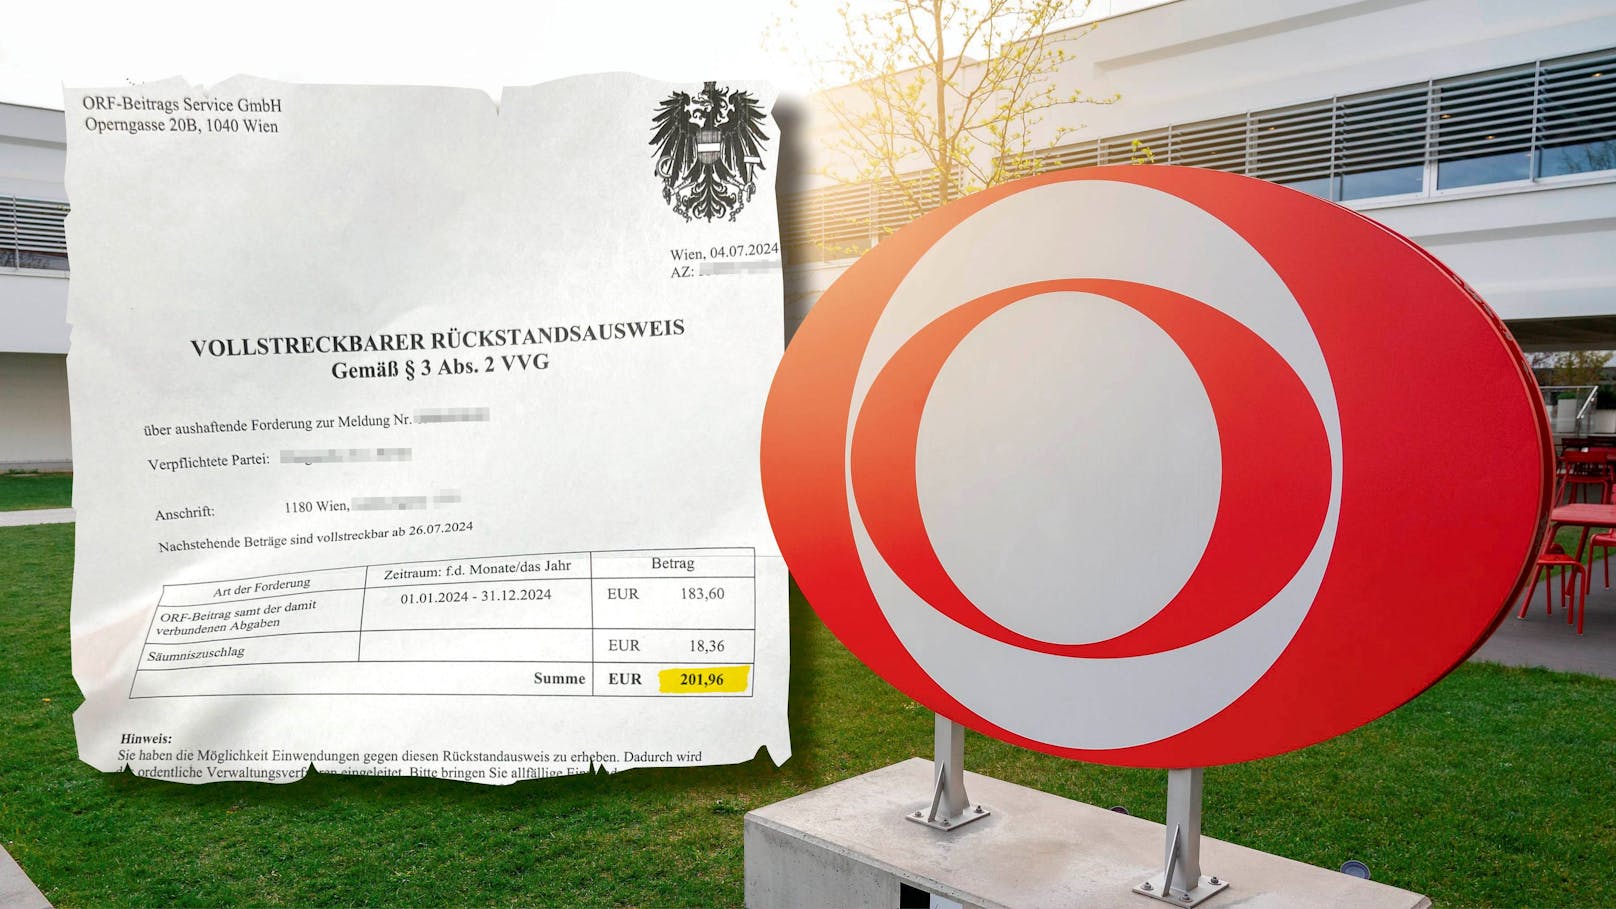 Wienerin bekam nun Brief: "ORF will mich pfänden!"